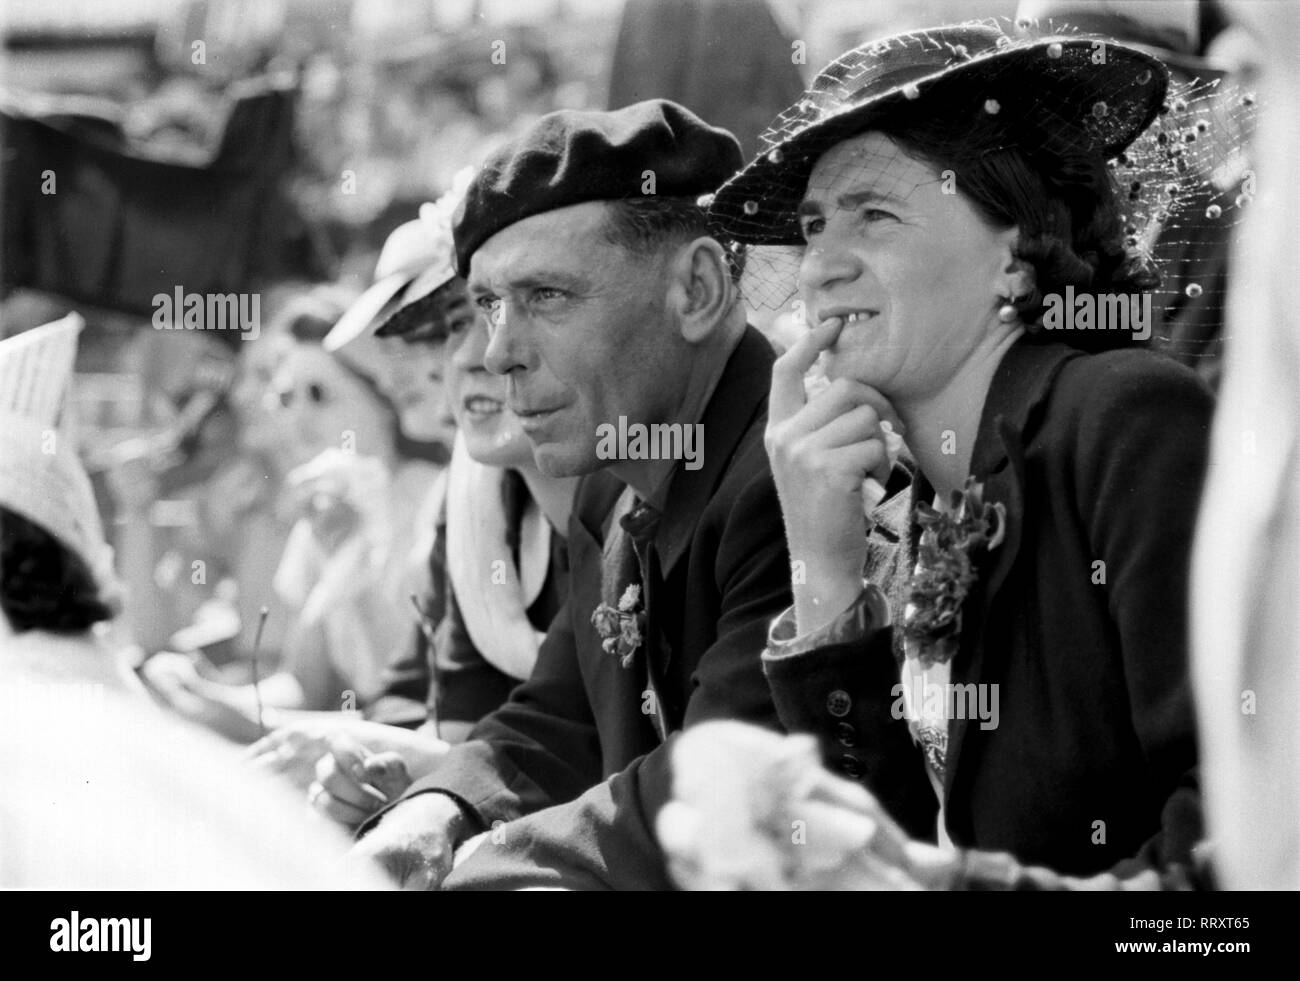 Frankreich - Francia meridionale nel 1950. Spettatore durante una corrida spettacolo. Foto di Erich Andres Südfrankreich ca. 1950, Paar als Zuschauer beim Stierkampf Foto Stock